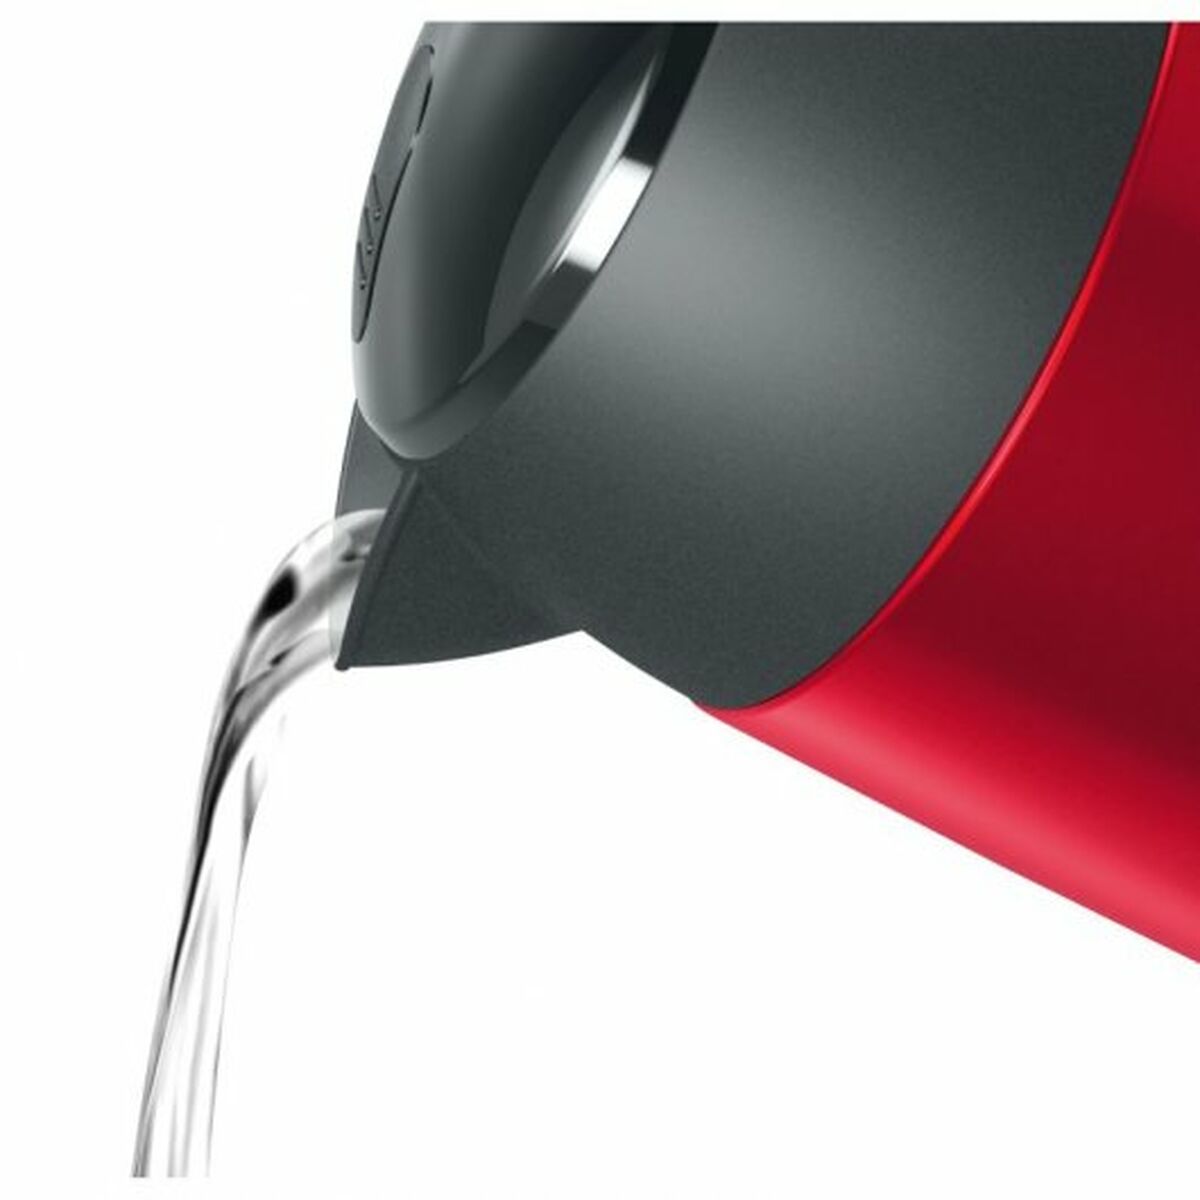 Kaufe Wasserkocher BOSCH TWK3P424 Rot Rot/Schwarz Edelstahl 2400 W 1,7 L bei AWK Flagship um € 72.00